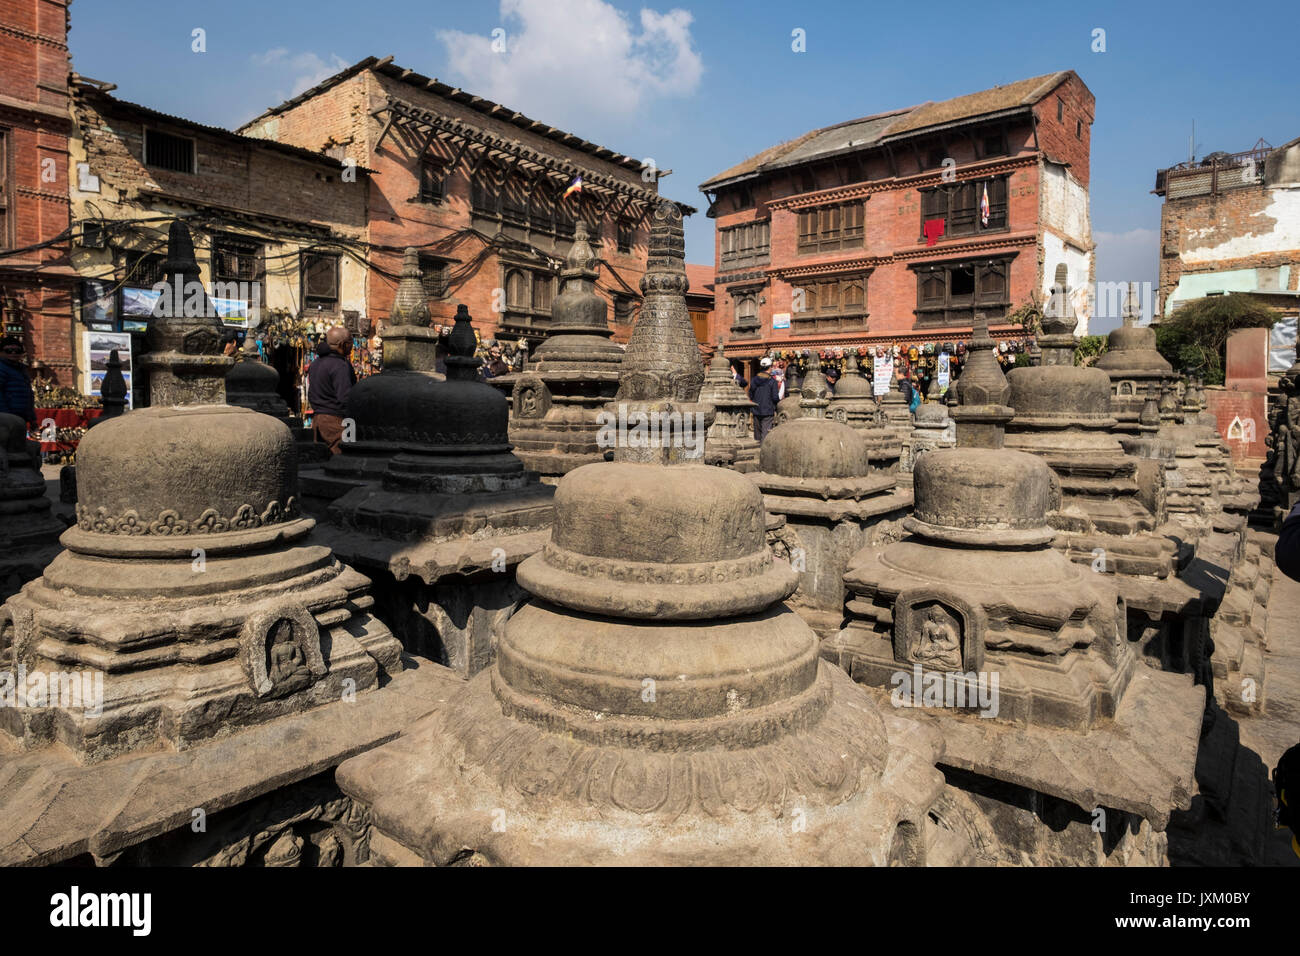 Nepal, Kathmandu, Swayambhunath temple Stock Photo